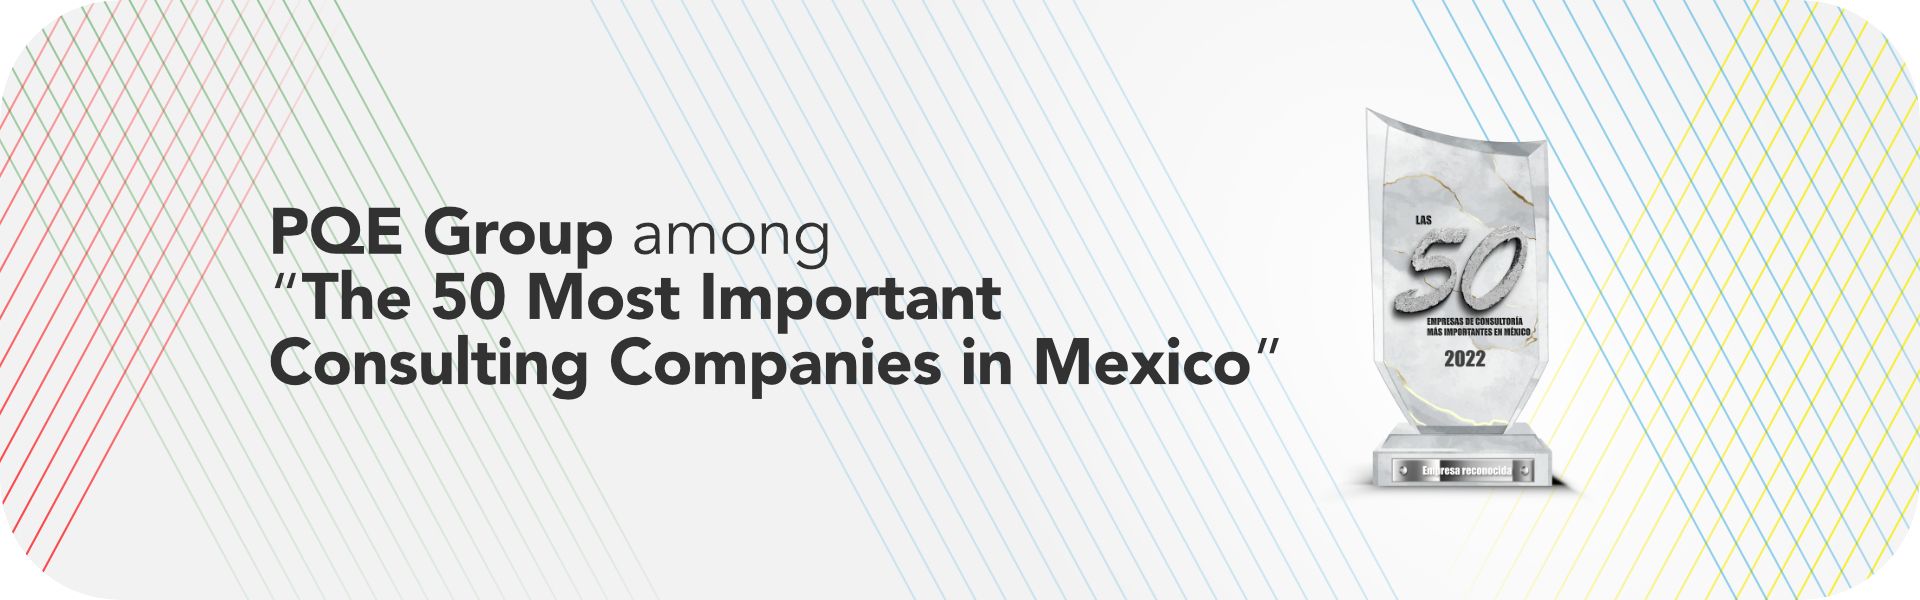 PQE Group, nombrada como una de “Las 50 Empresas de Consultoría más importantes en México”